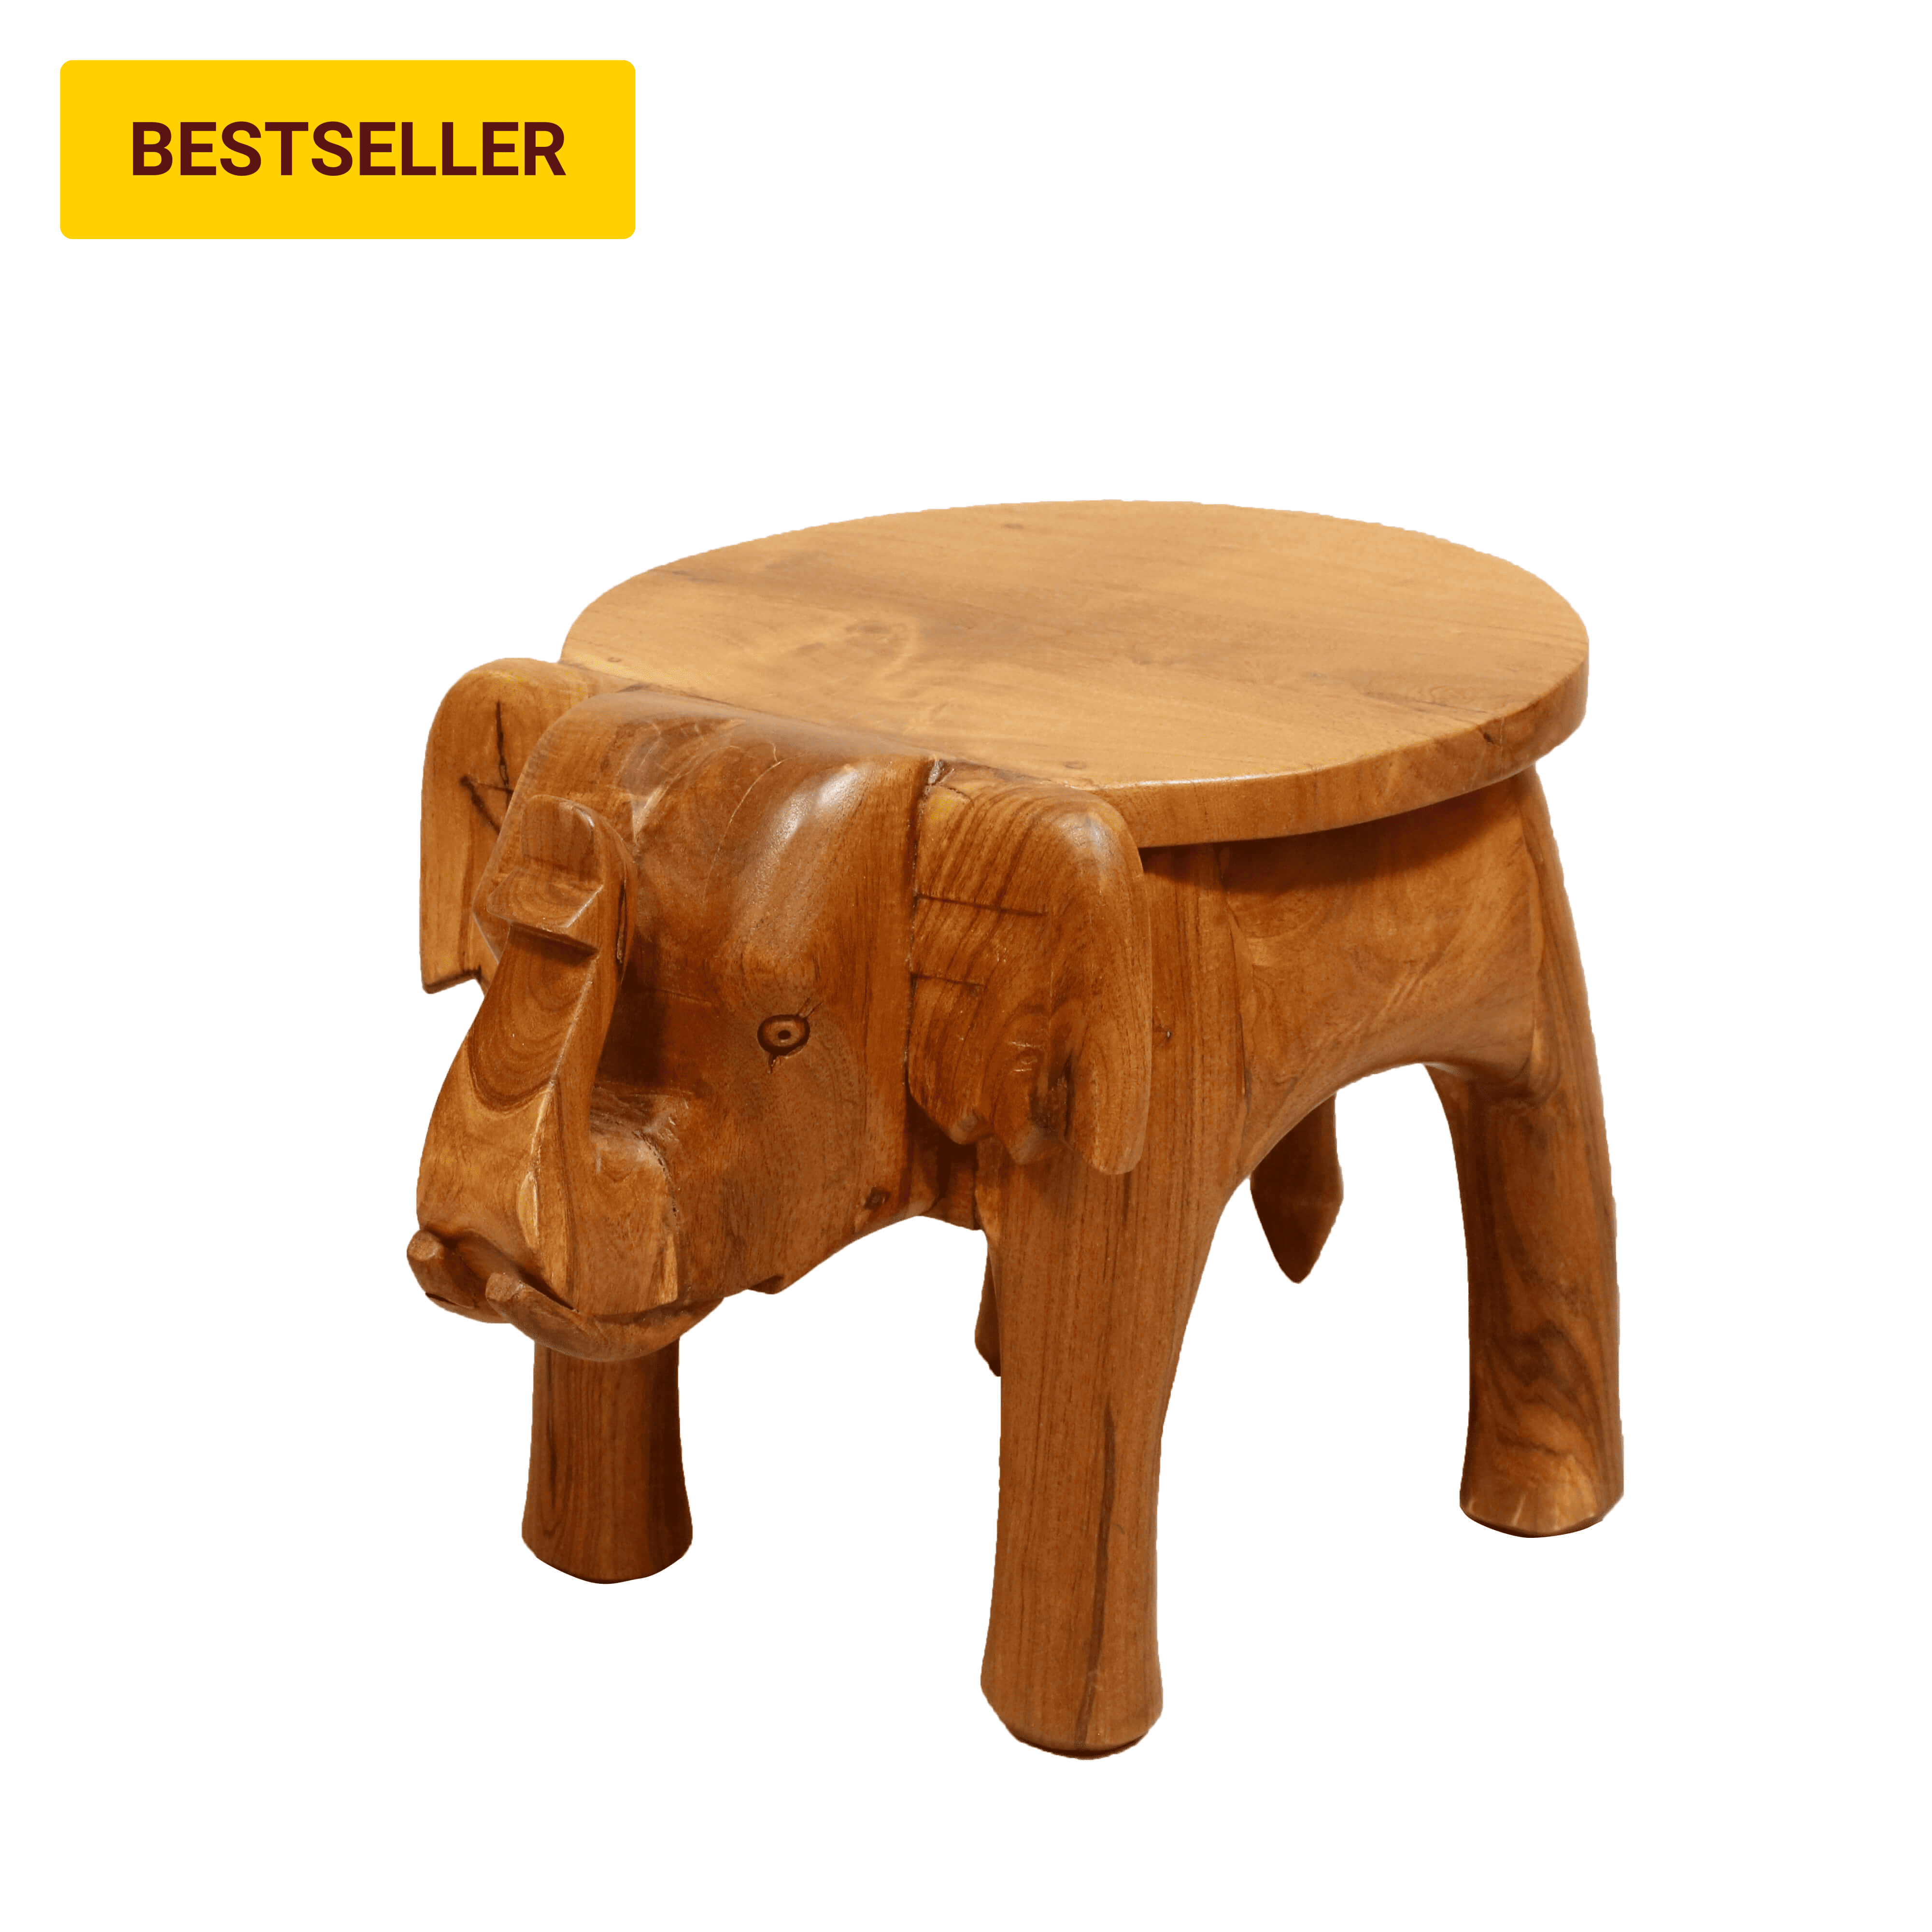 Wooden Tone Elephant Table Stand XXL (18 x 25 x18 Inch) Animal Figurine